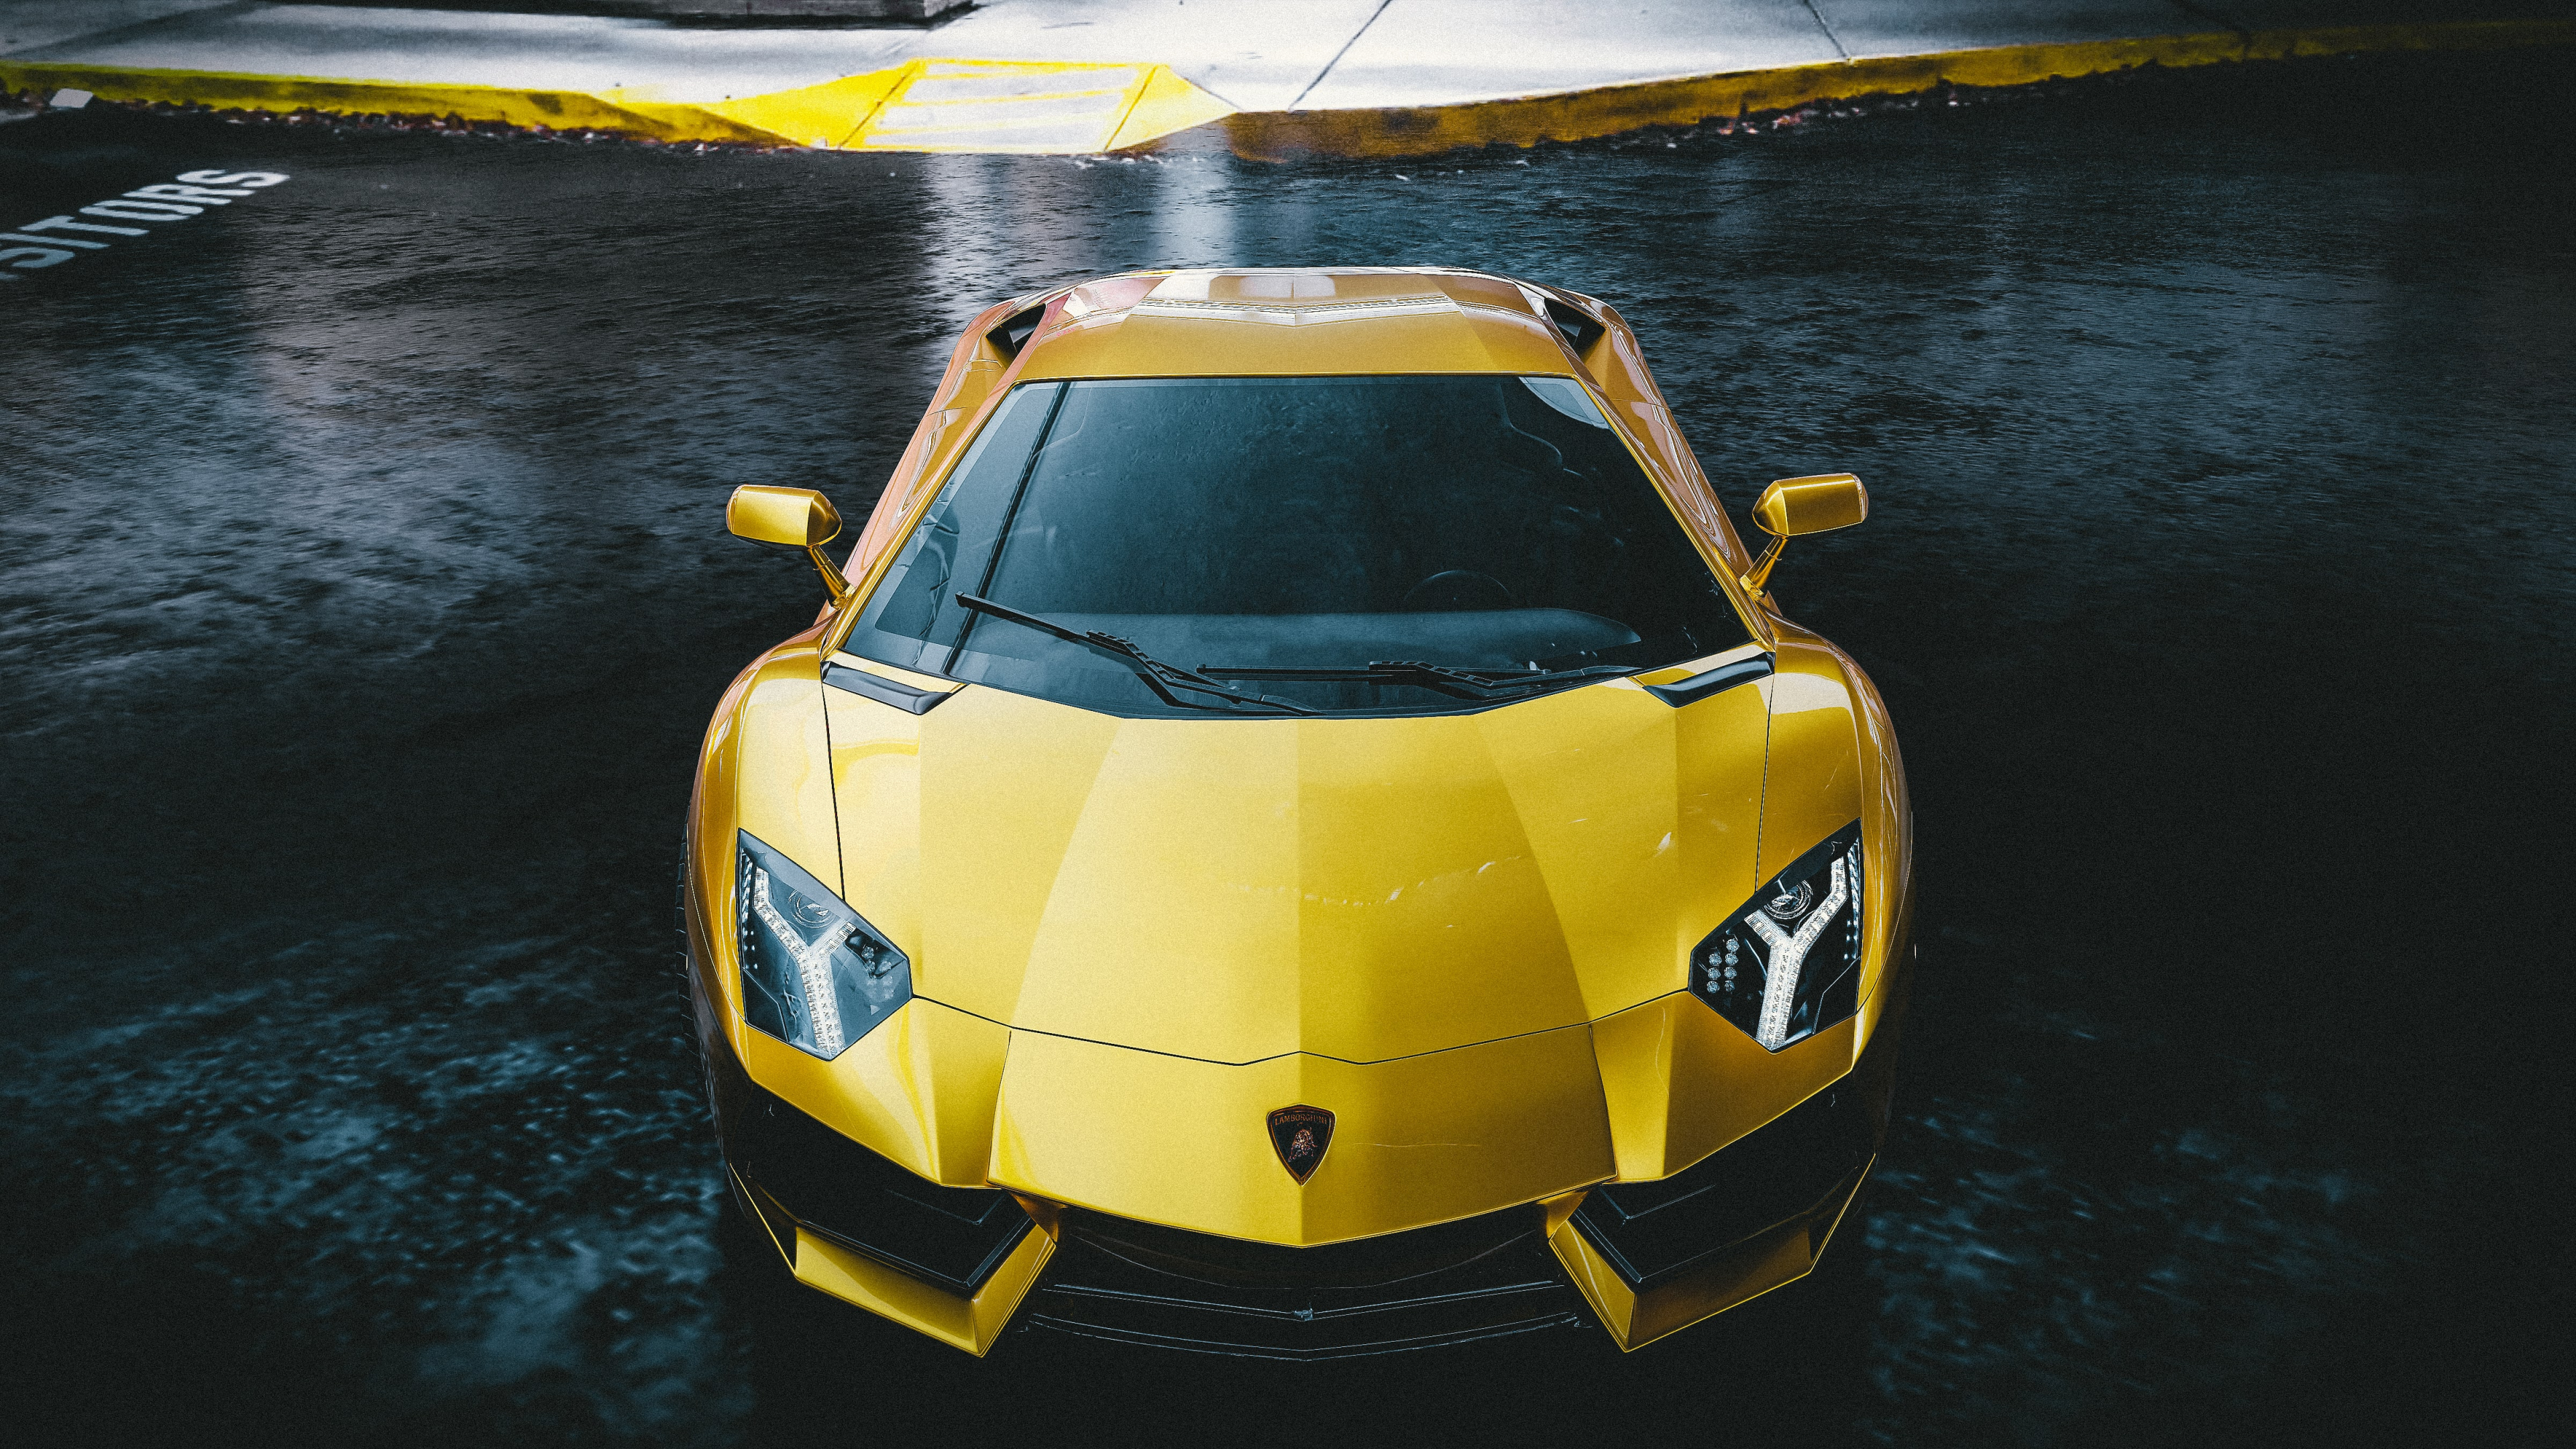 Lamborghini Aventador in Blender cycles render Bild